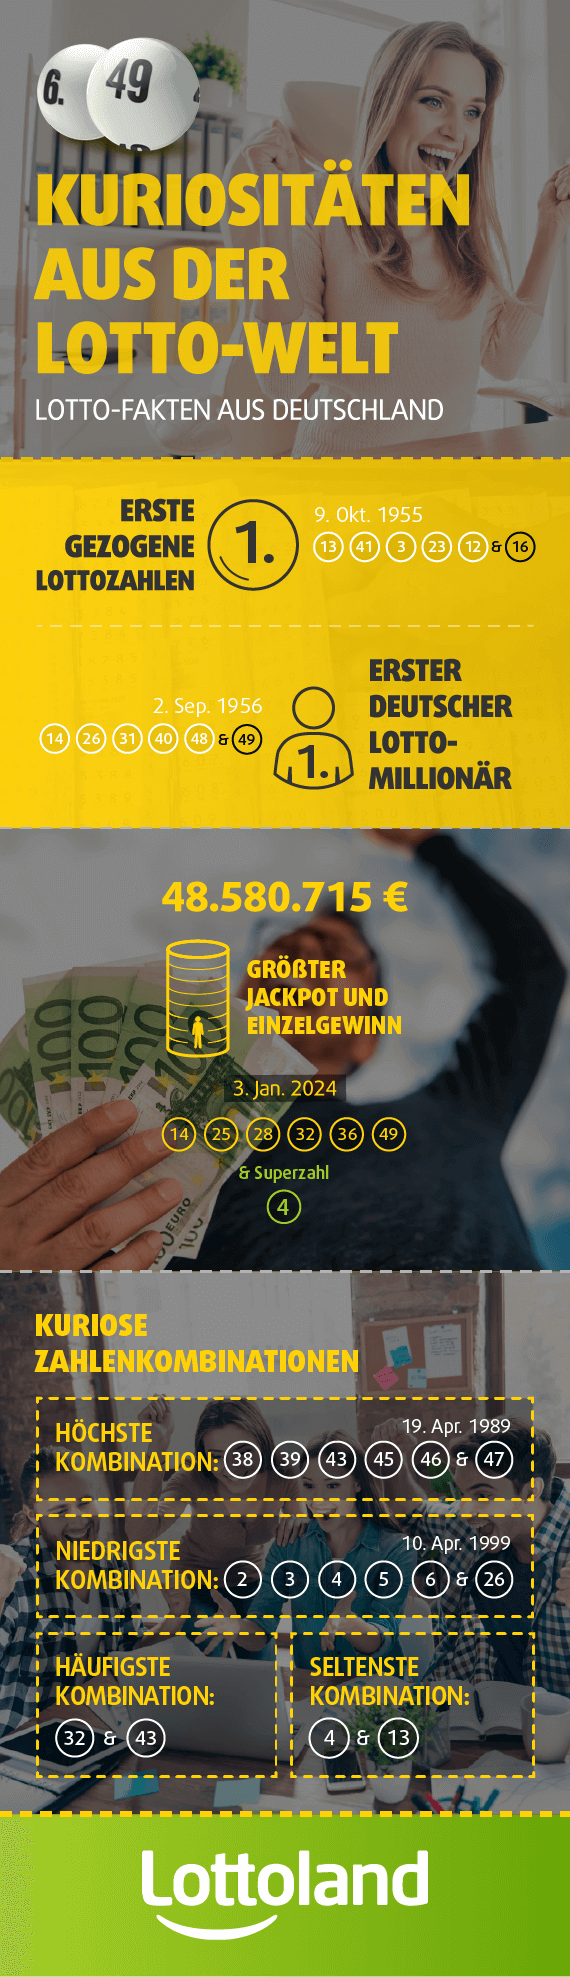 Infografik mir Lotto-Fakten aus Deutschland